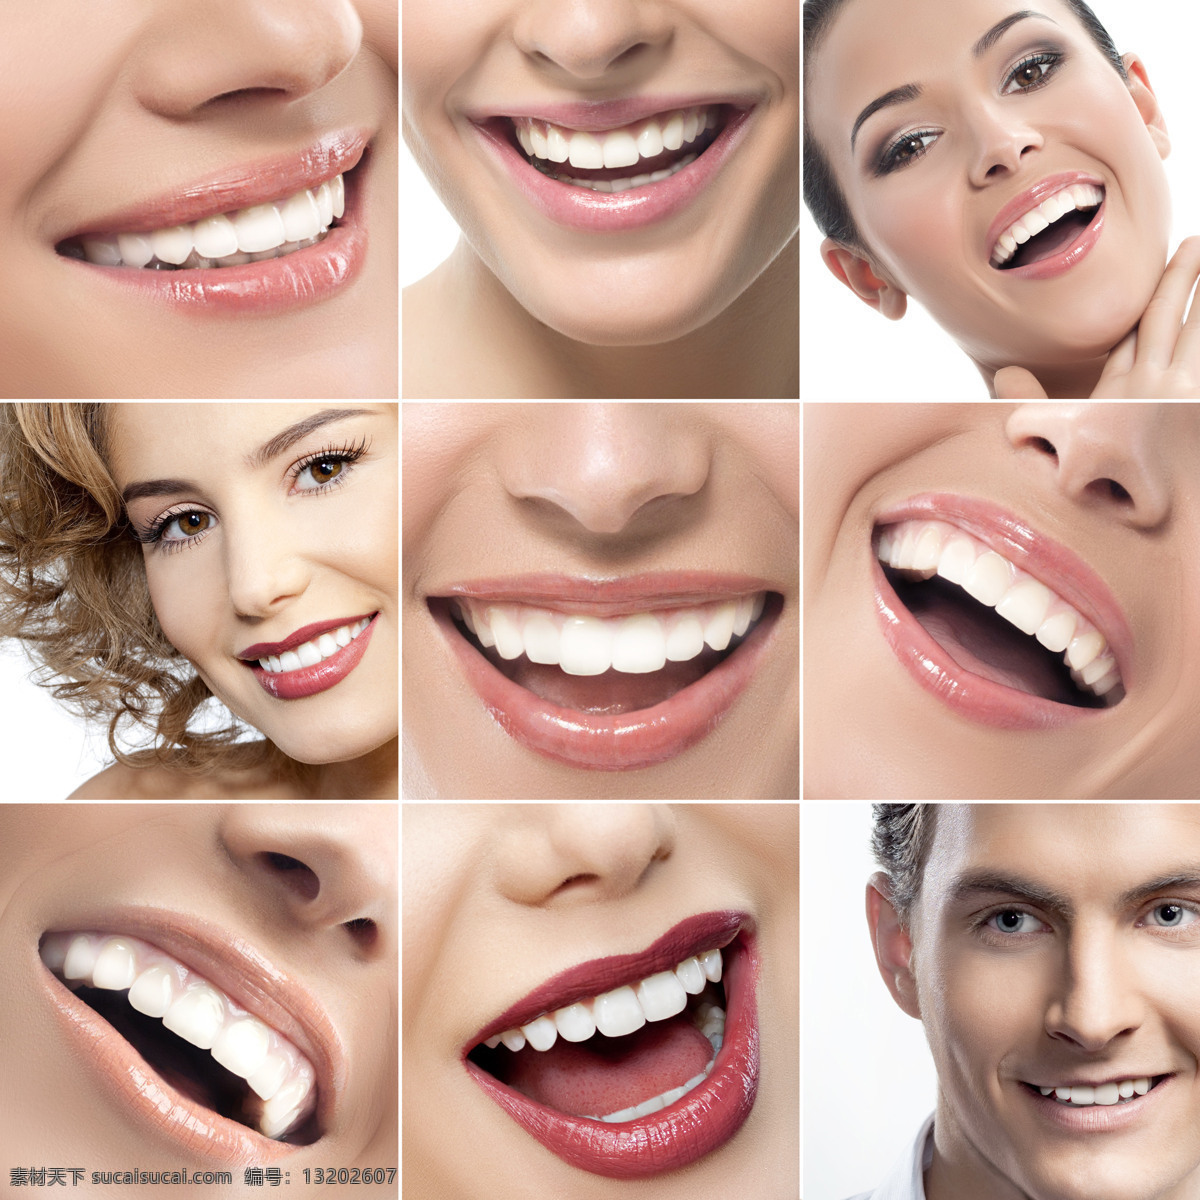 健康 牙齿 女人 洁白牙齿 口腔 医疗主题 人物图库 医疗护理 现代科技